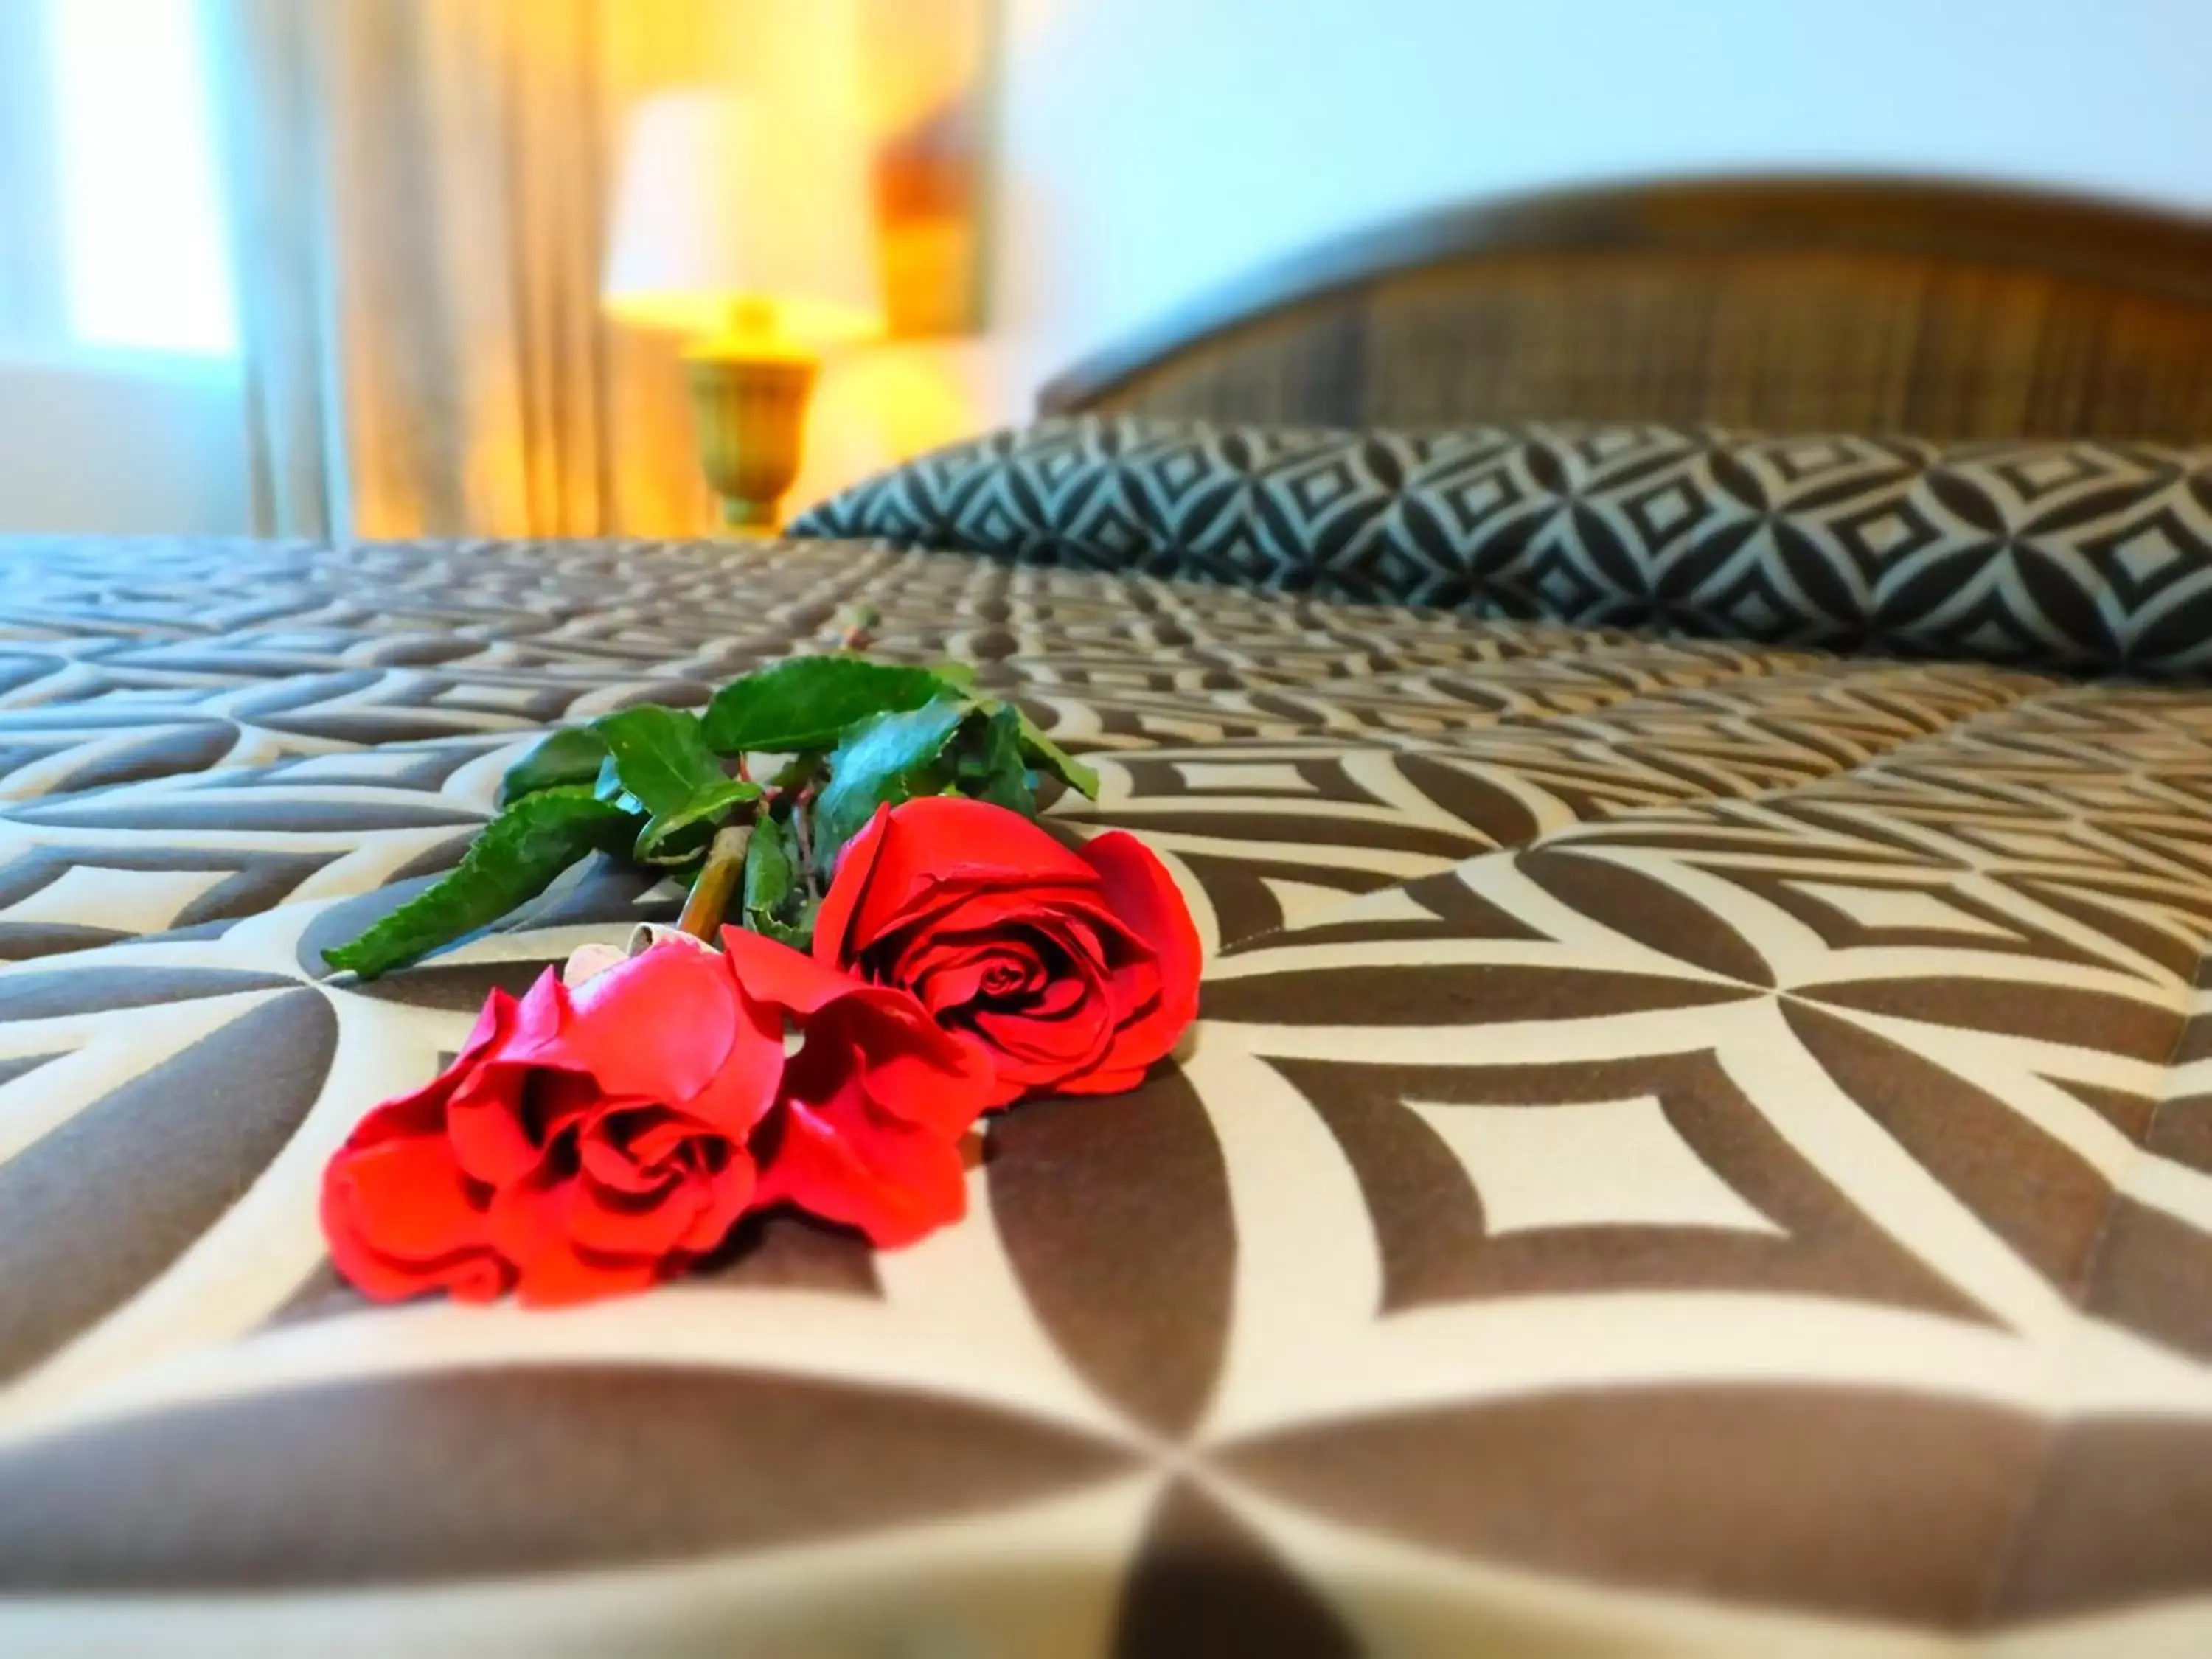 Bed in Napolitano Hotel